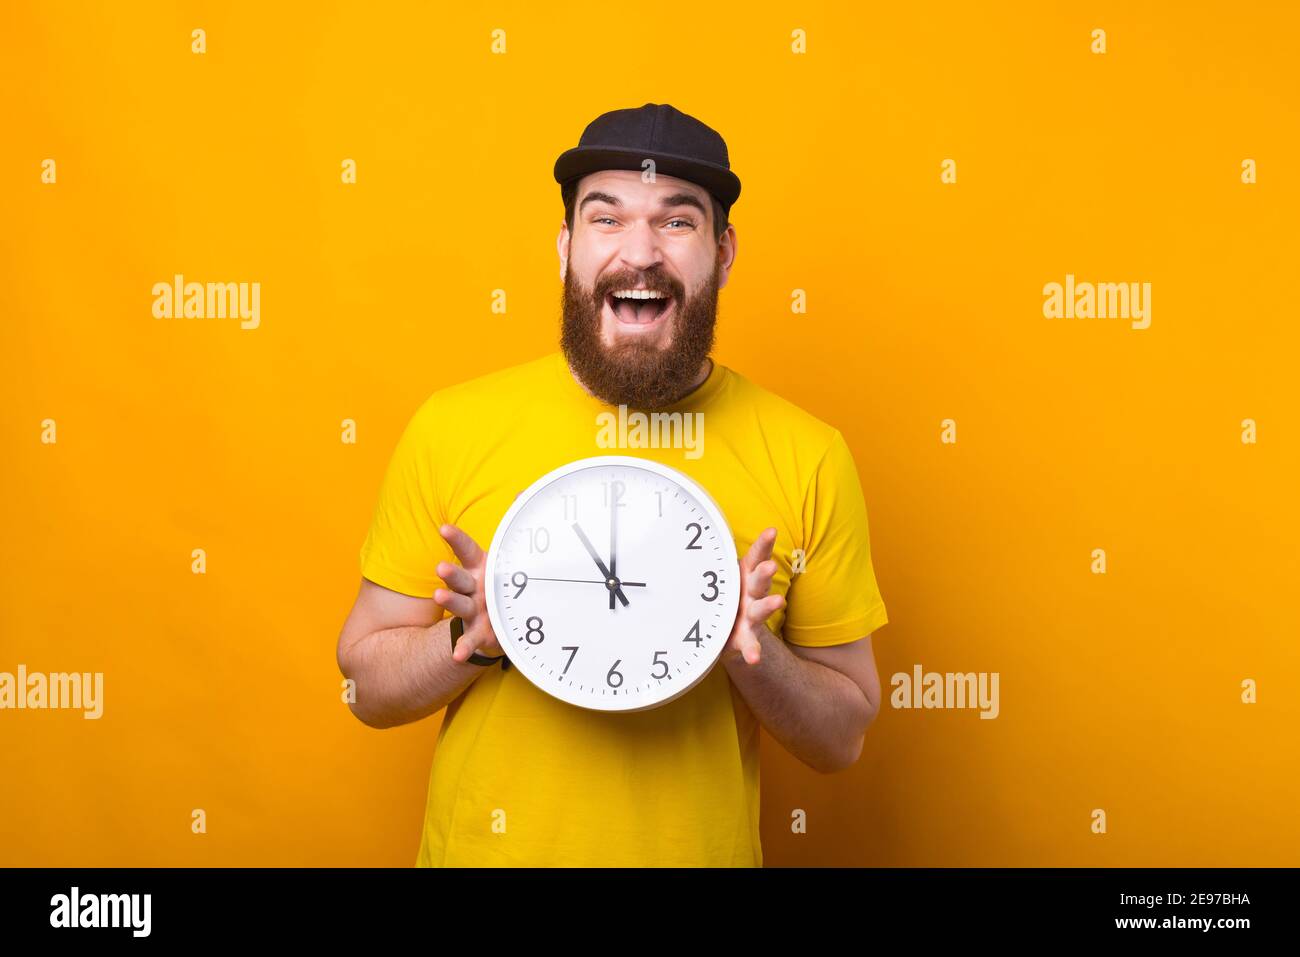 Immagine di un uomo eccitato che tiene un orologio vicino ad una parete gialla sorridente . Foto Stock